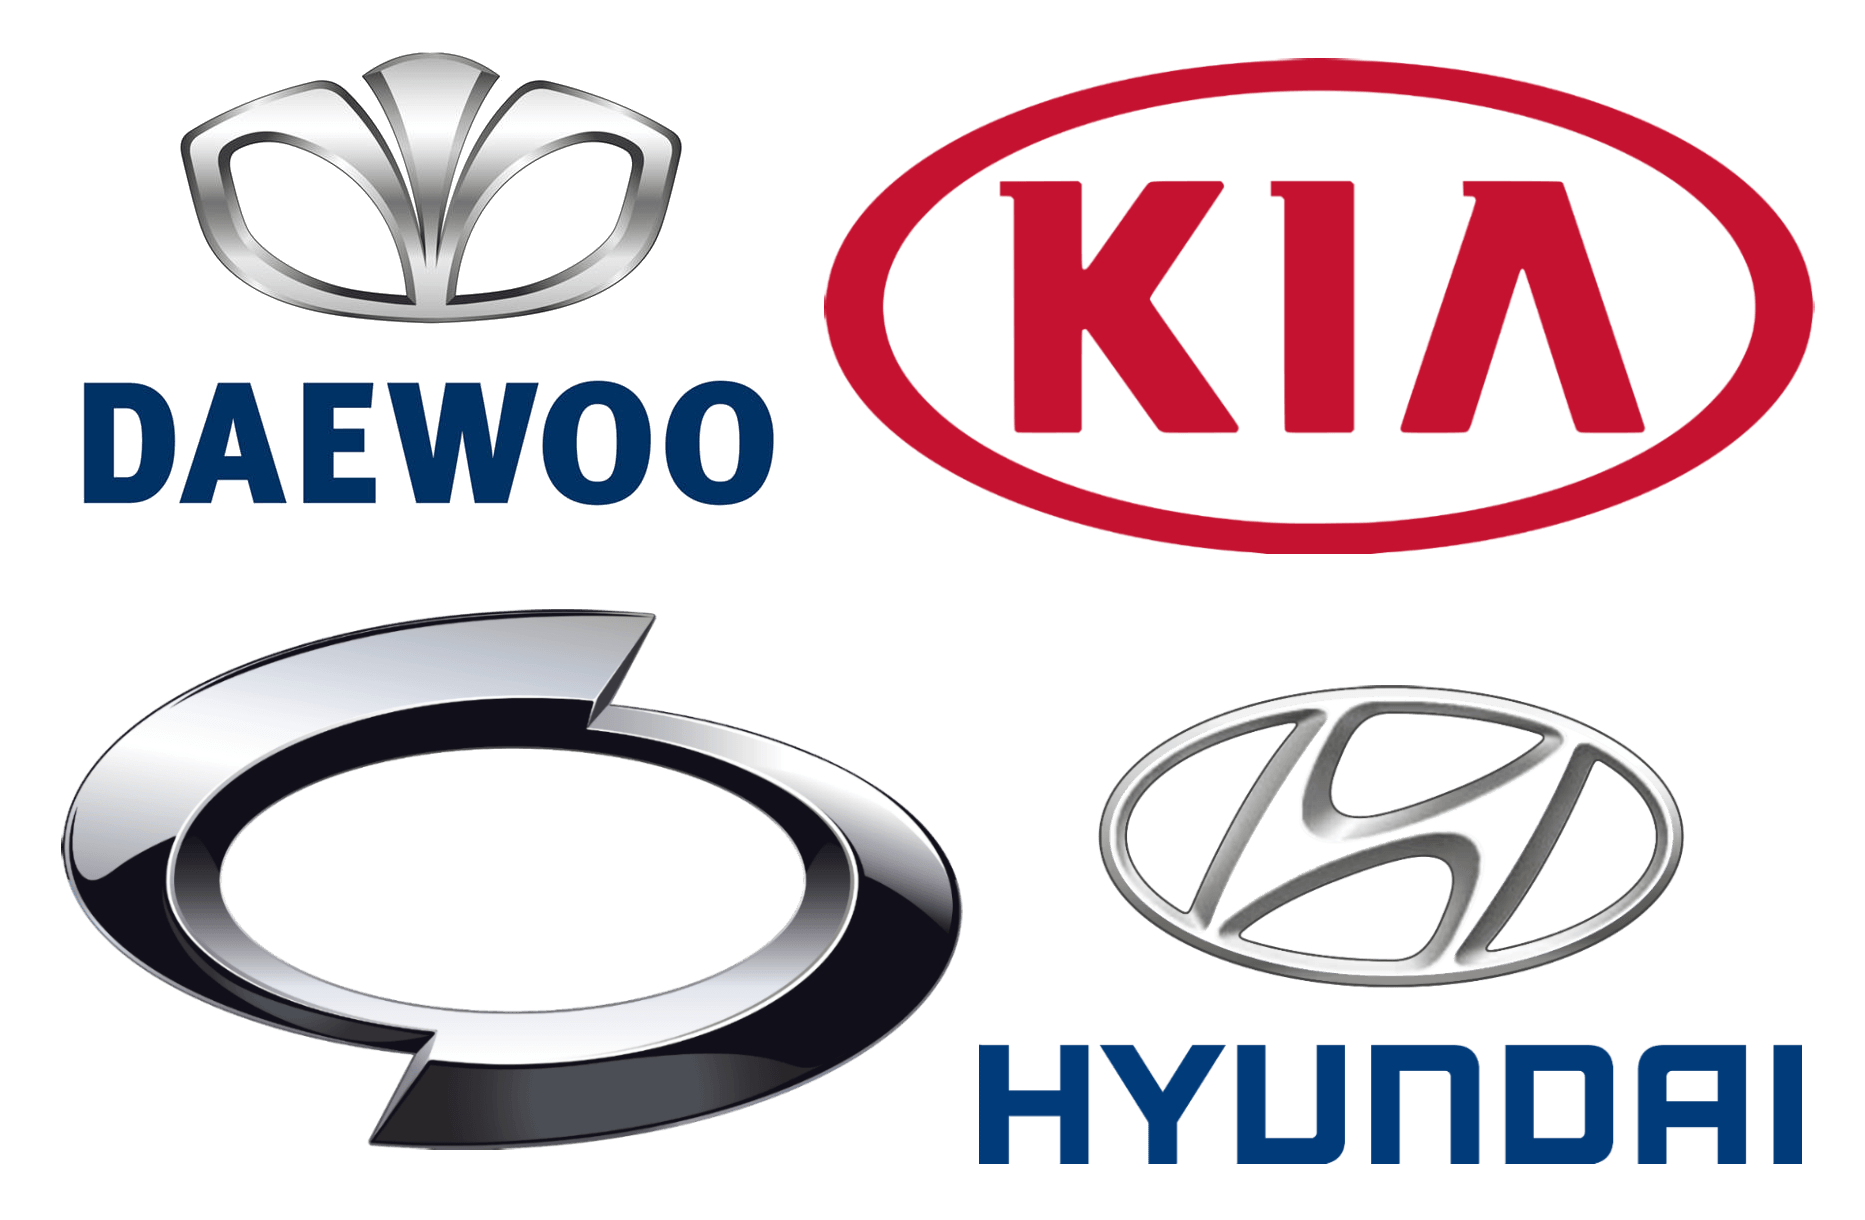 International Car Company Logo - Korean Car Brands, Companies and Manufacturers | Car Brand Names.com